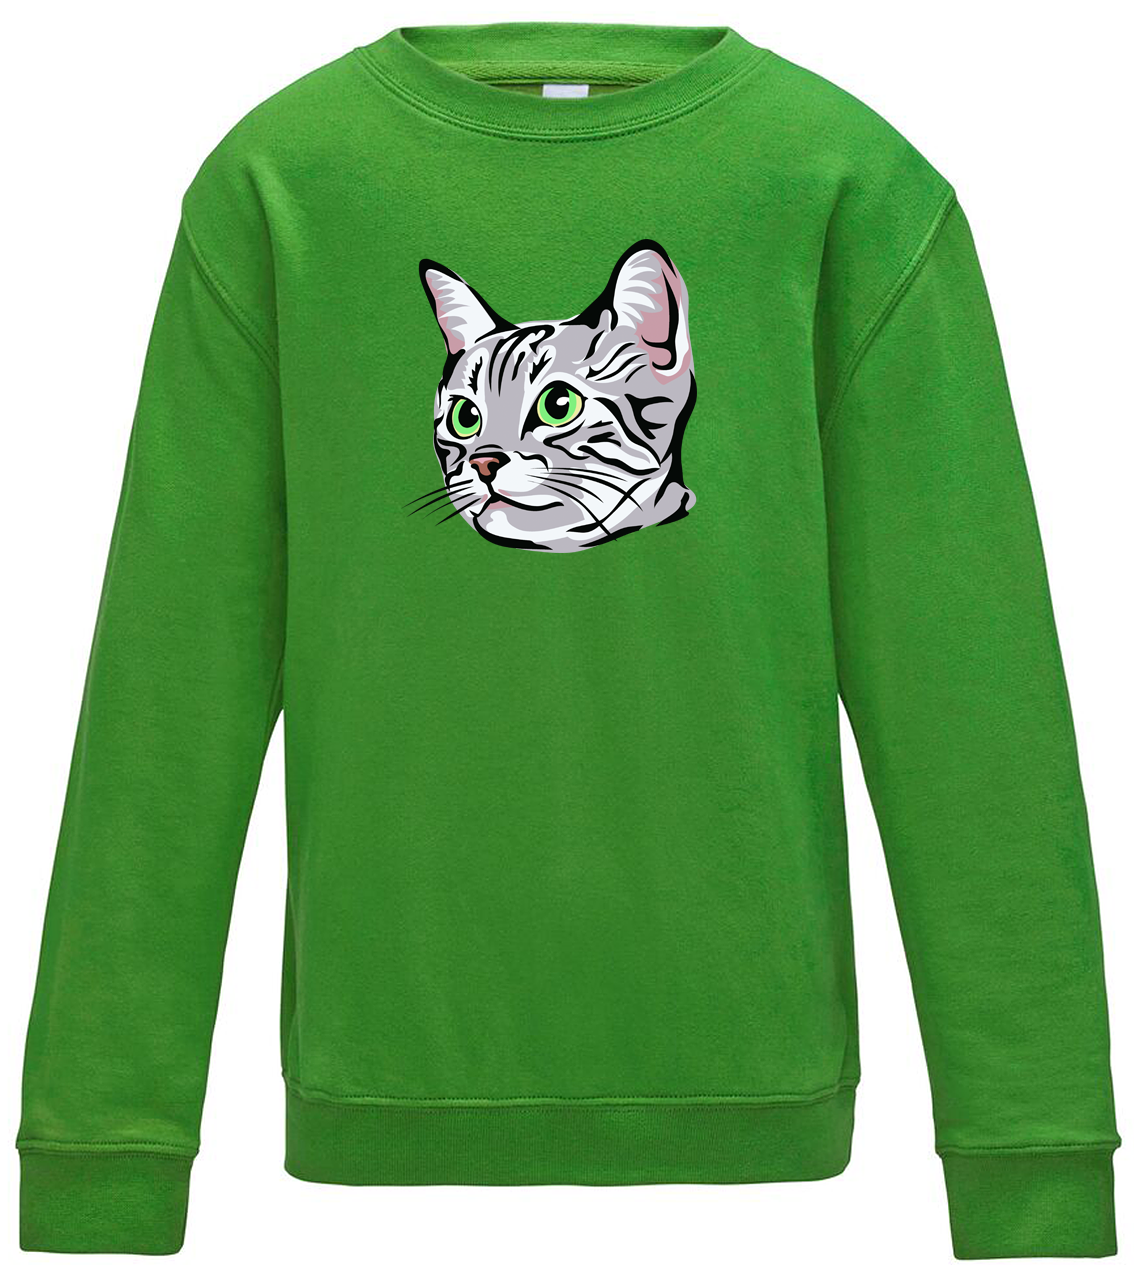 Dětská mikina s kočkou - Zelenoočka Velikost: 5/6 (110/116), Barva: Zelená